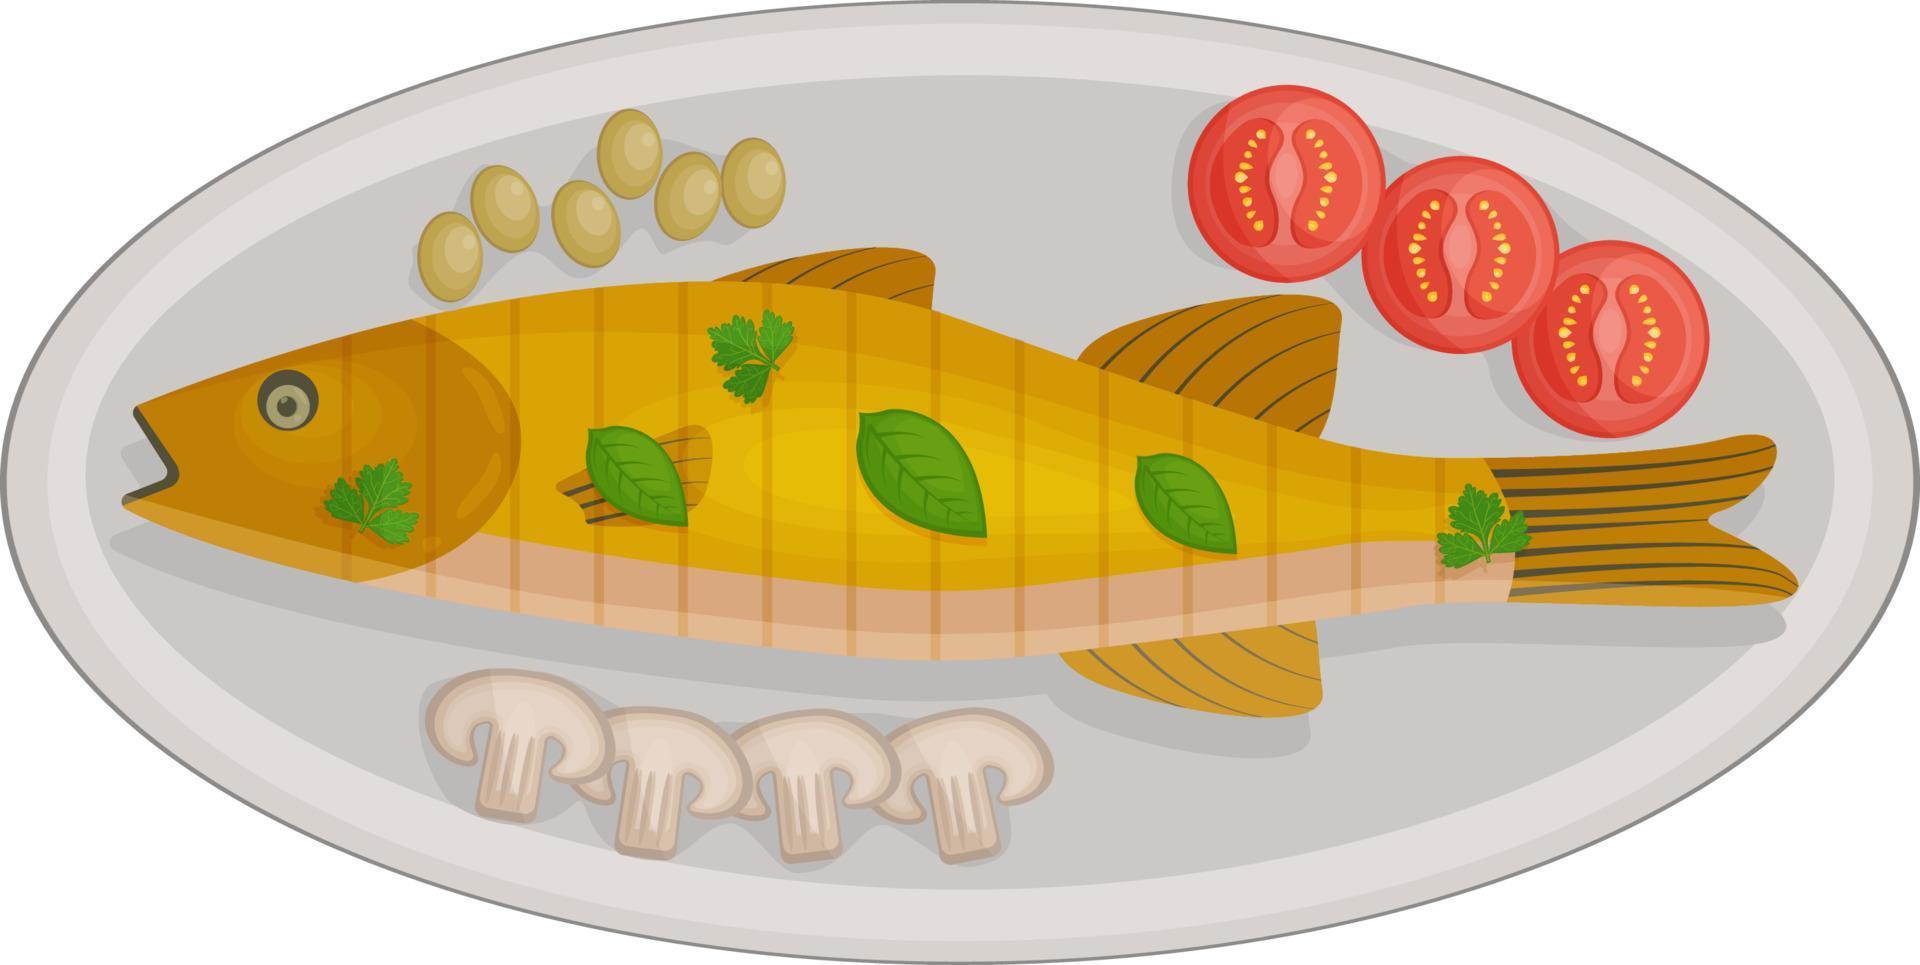 heerlijk gebakken zee bas geserveerd Aan een ovaal bord met kers tomaten, olijven en champignons en basilicum bladeren. een traditioneel schotel van middellandse Zee keuken. vector illustratie.